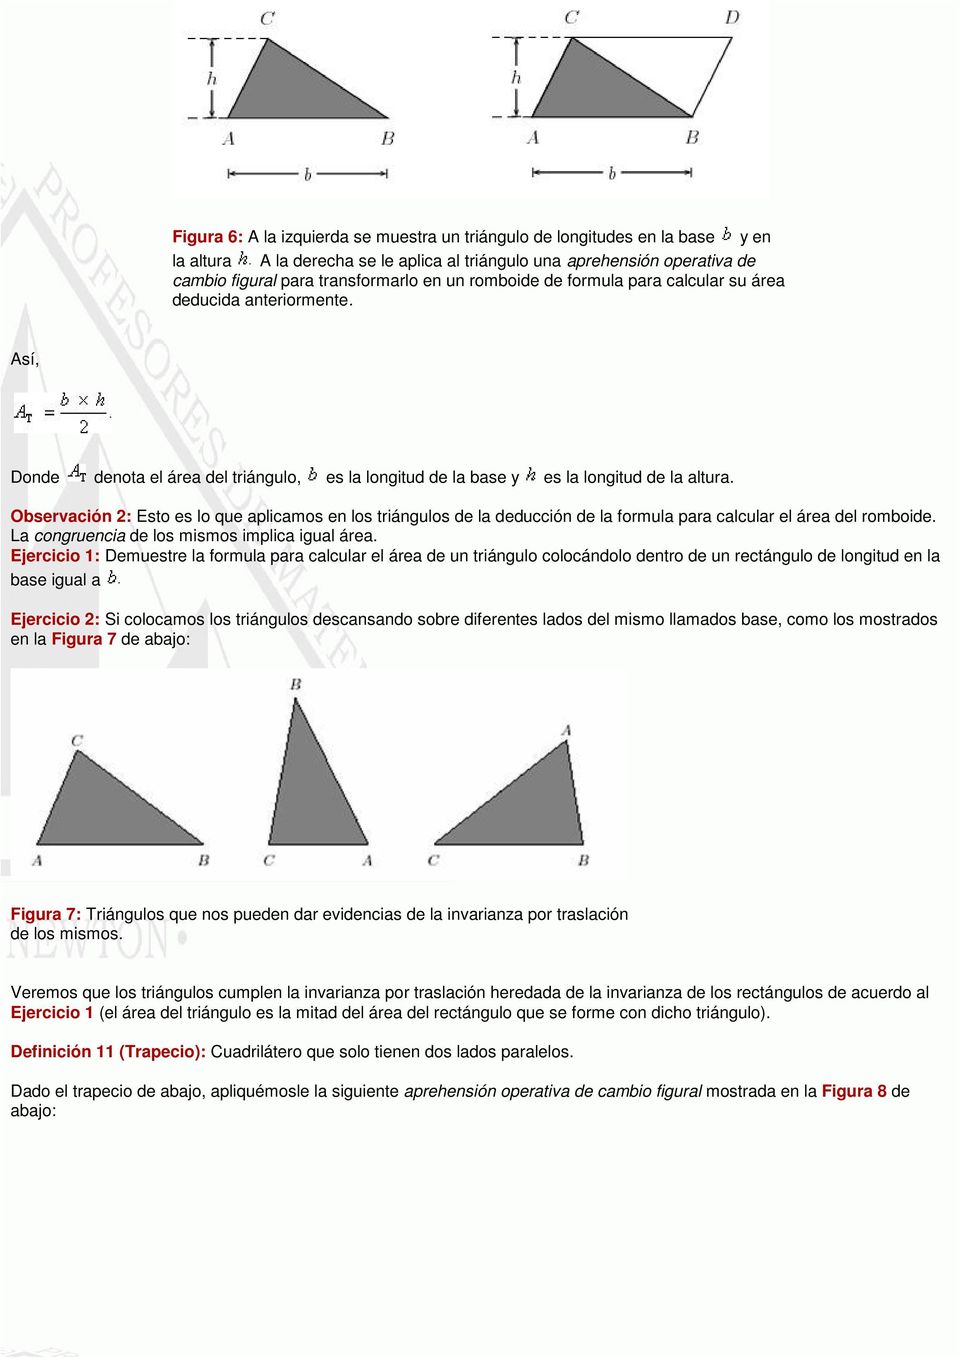 Observación 2: Esto es lo que aplicamos en los triángulos de la deducción de la formula para calcular el área del romboide. La congruencia de los mismos implica igual área.